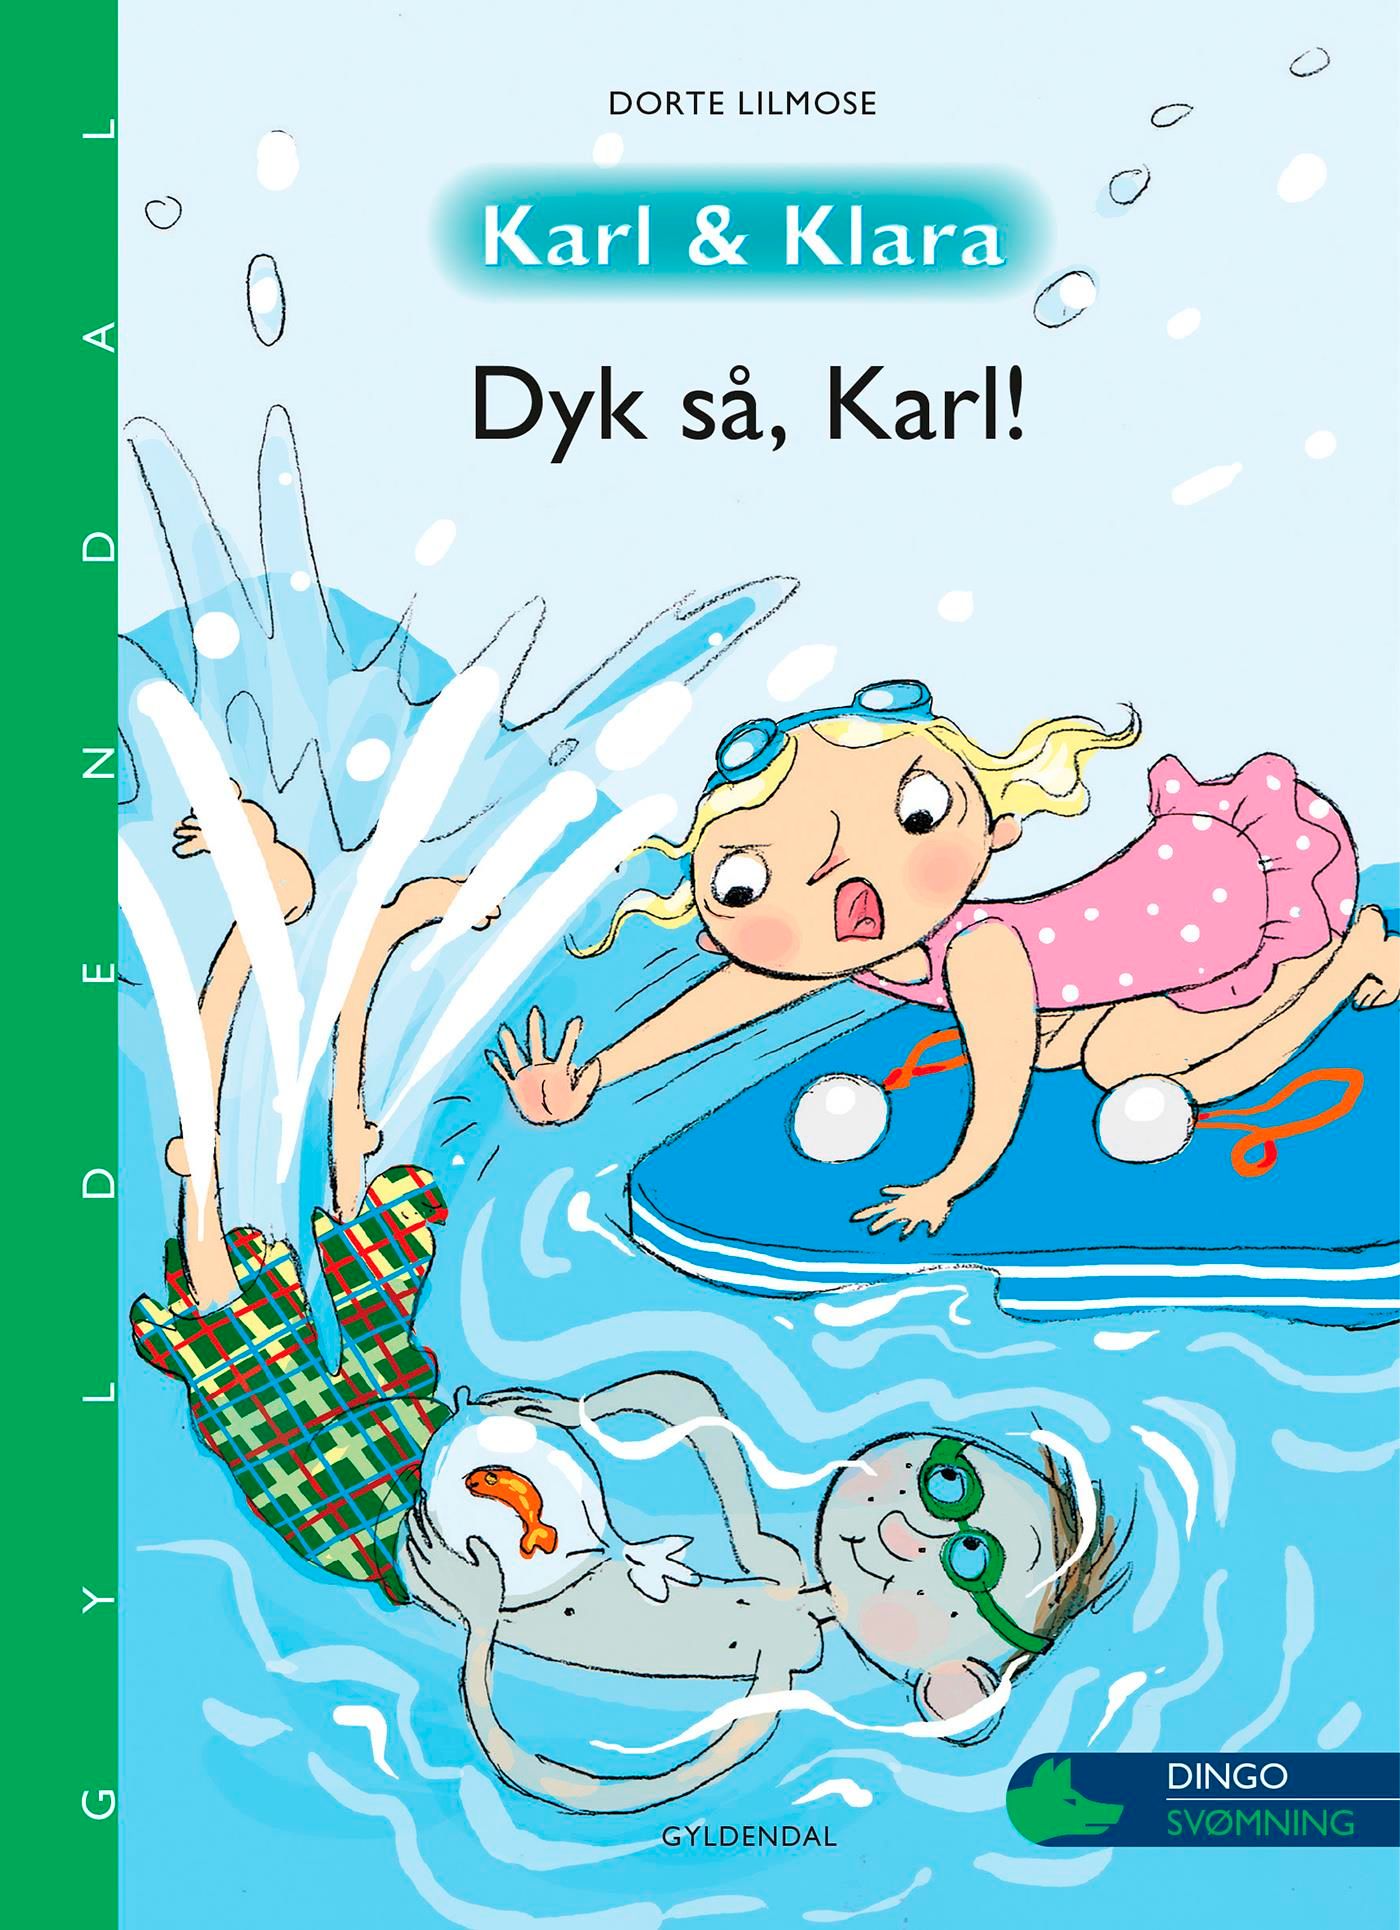 Karl og Klara - Dyk så, Karl!, e-bok av Dorte Lilmose